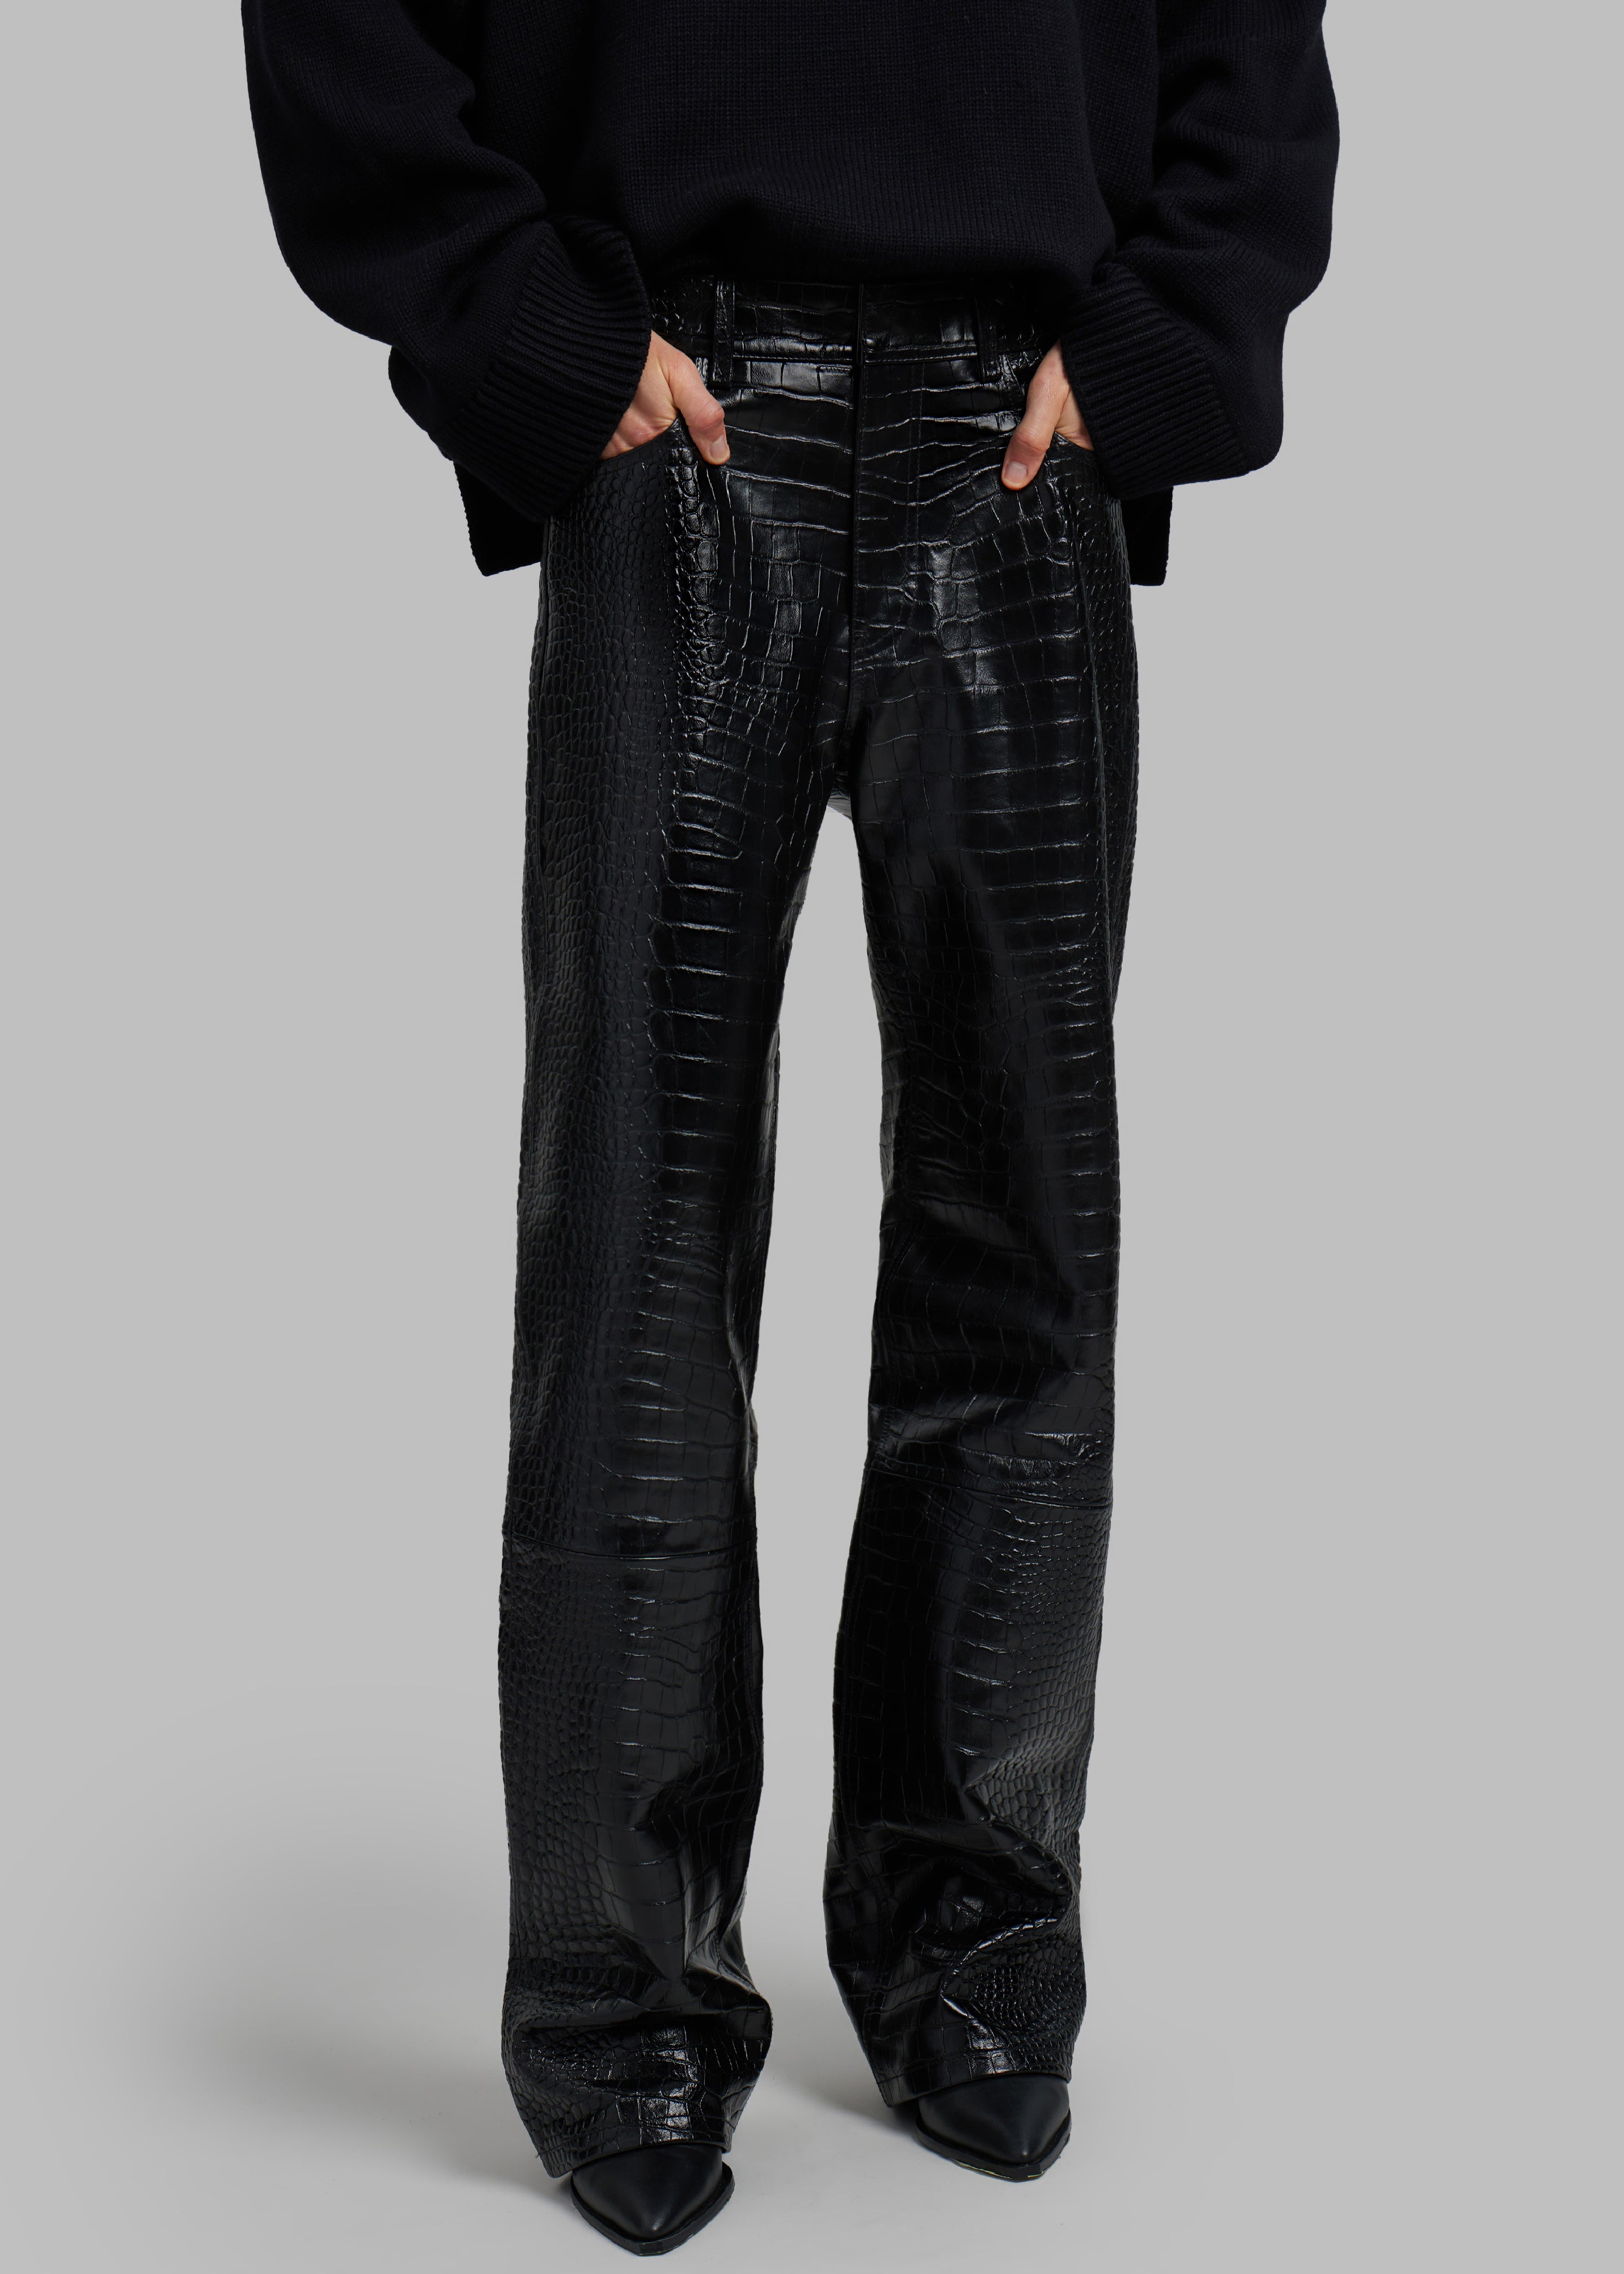 Bonnie Croc-Effect Pants - Black - 2